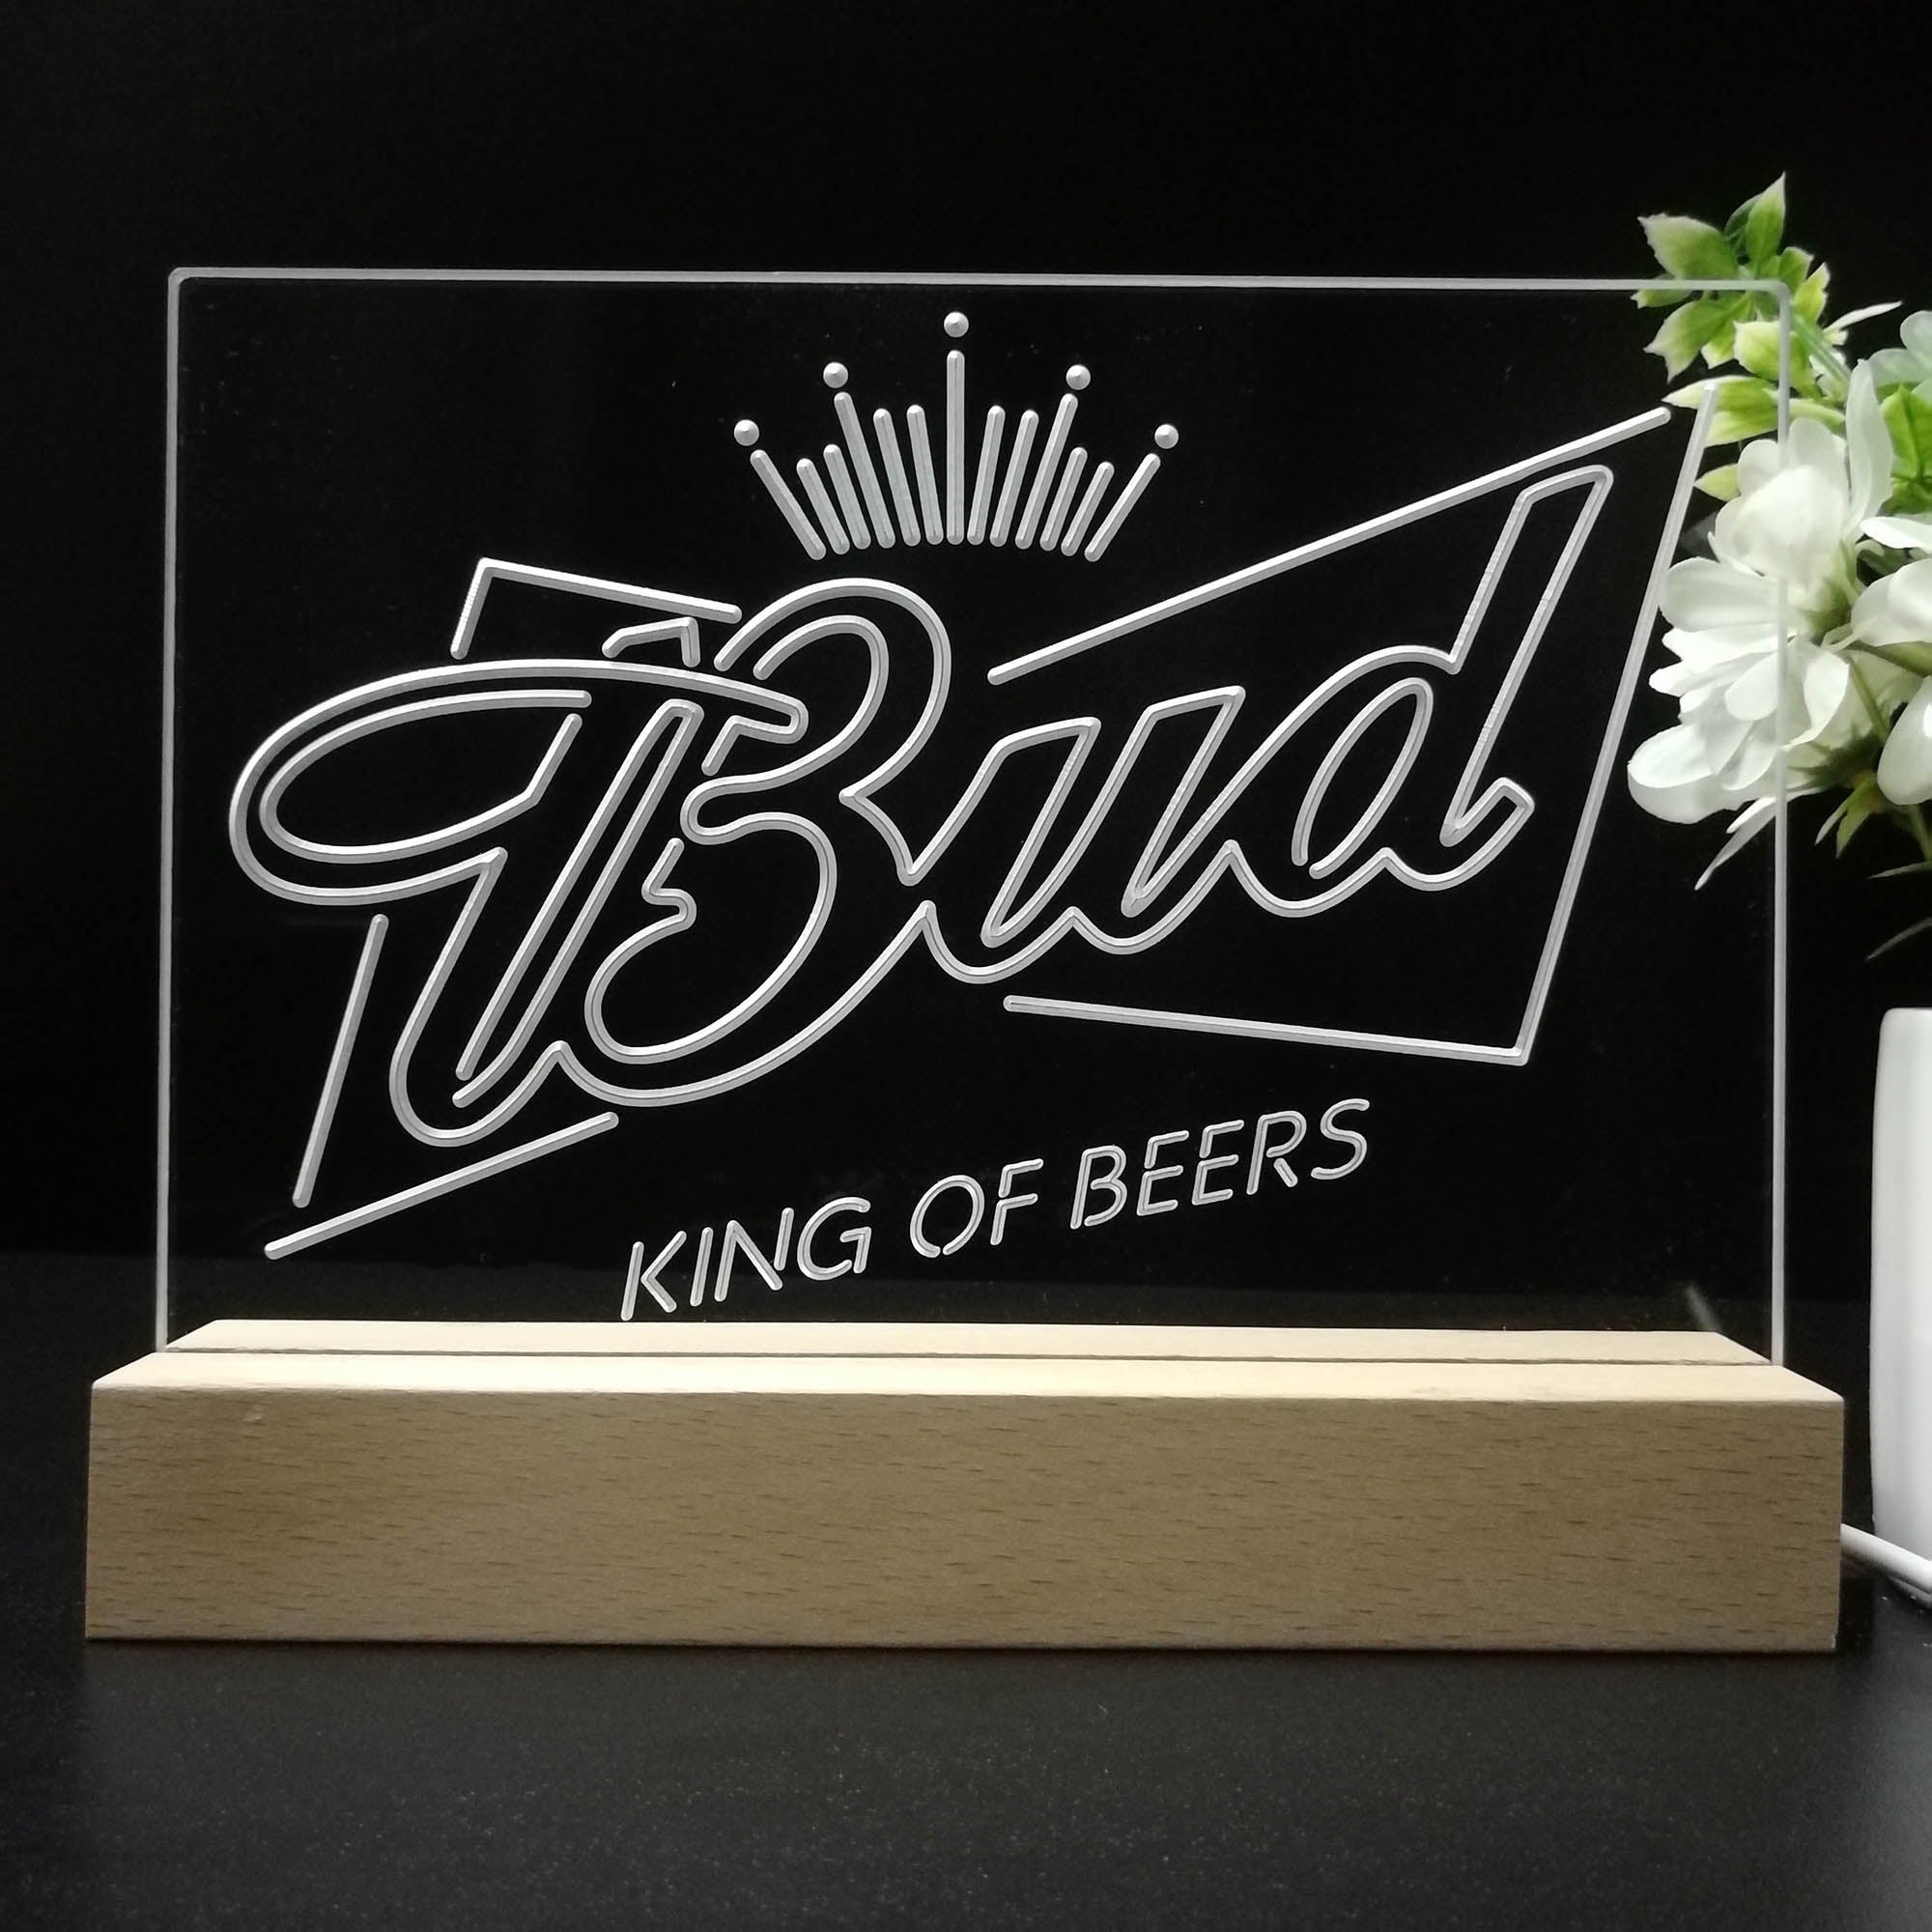 Bud King of Beer Crown Neon Sign Pub Bar Lamp